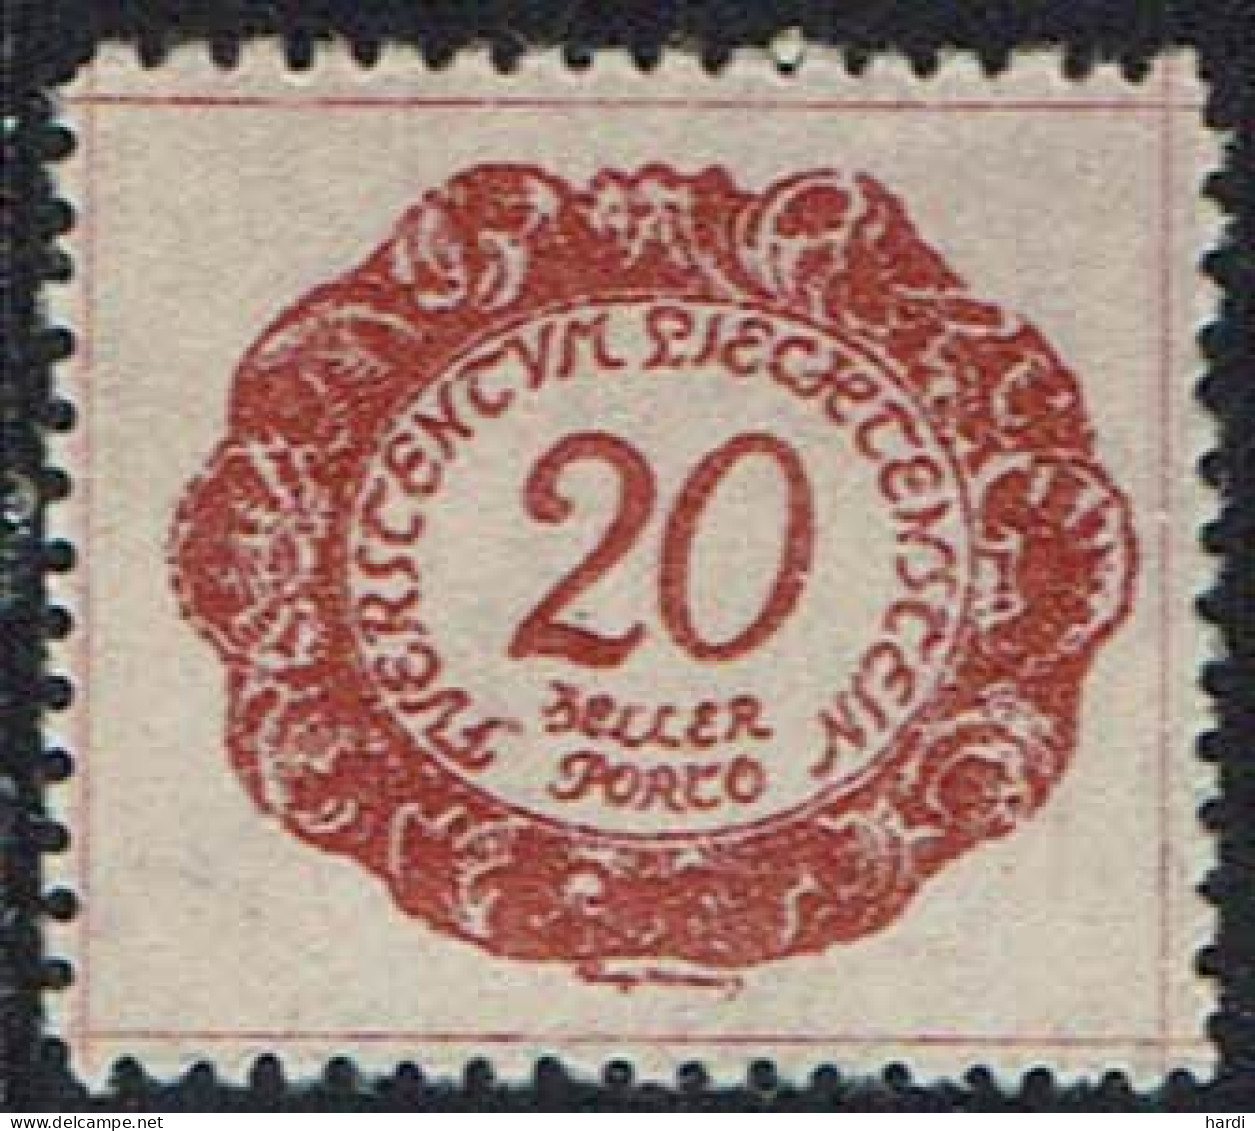 Liechtenstein 1920, MiNr.: 4, Porto Postfrisch - Postage Due